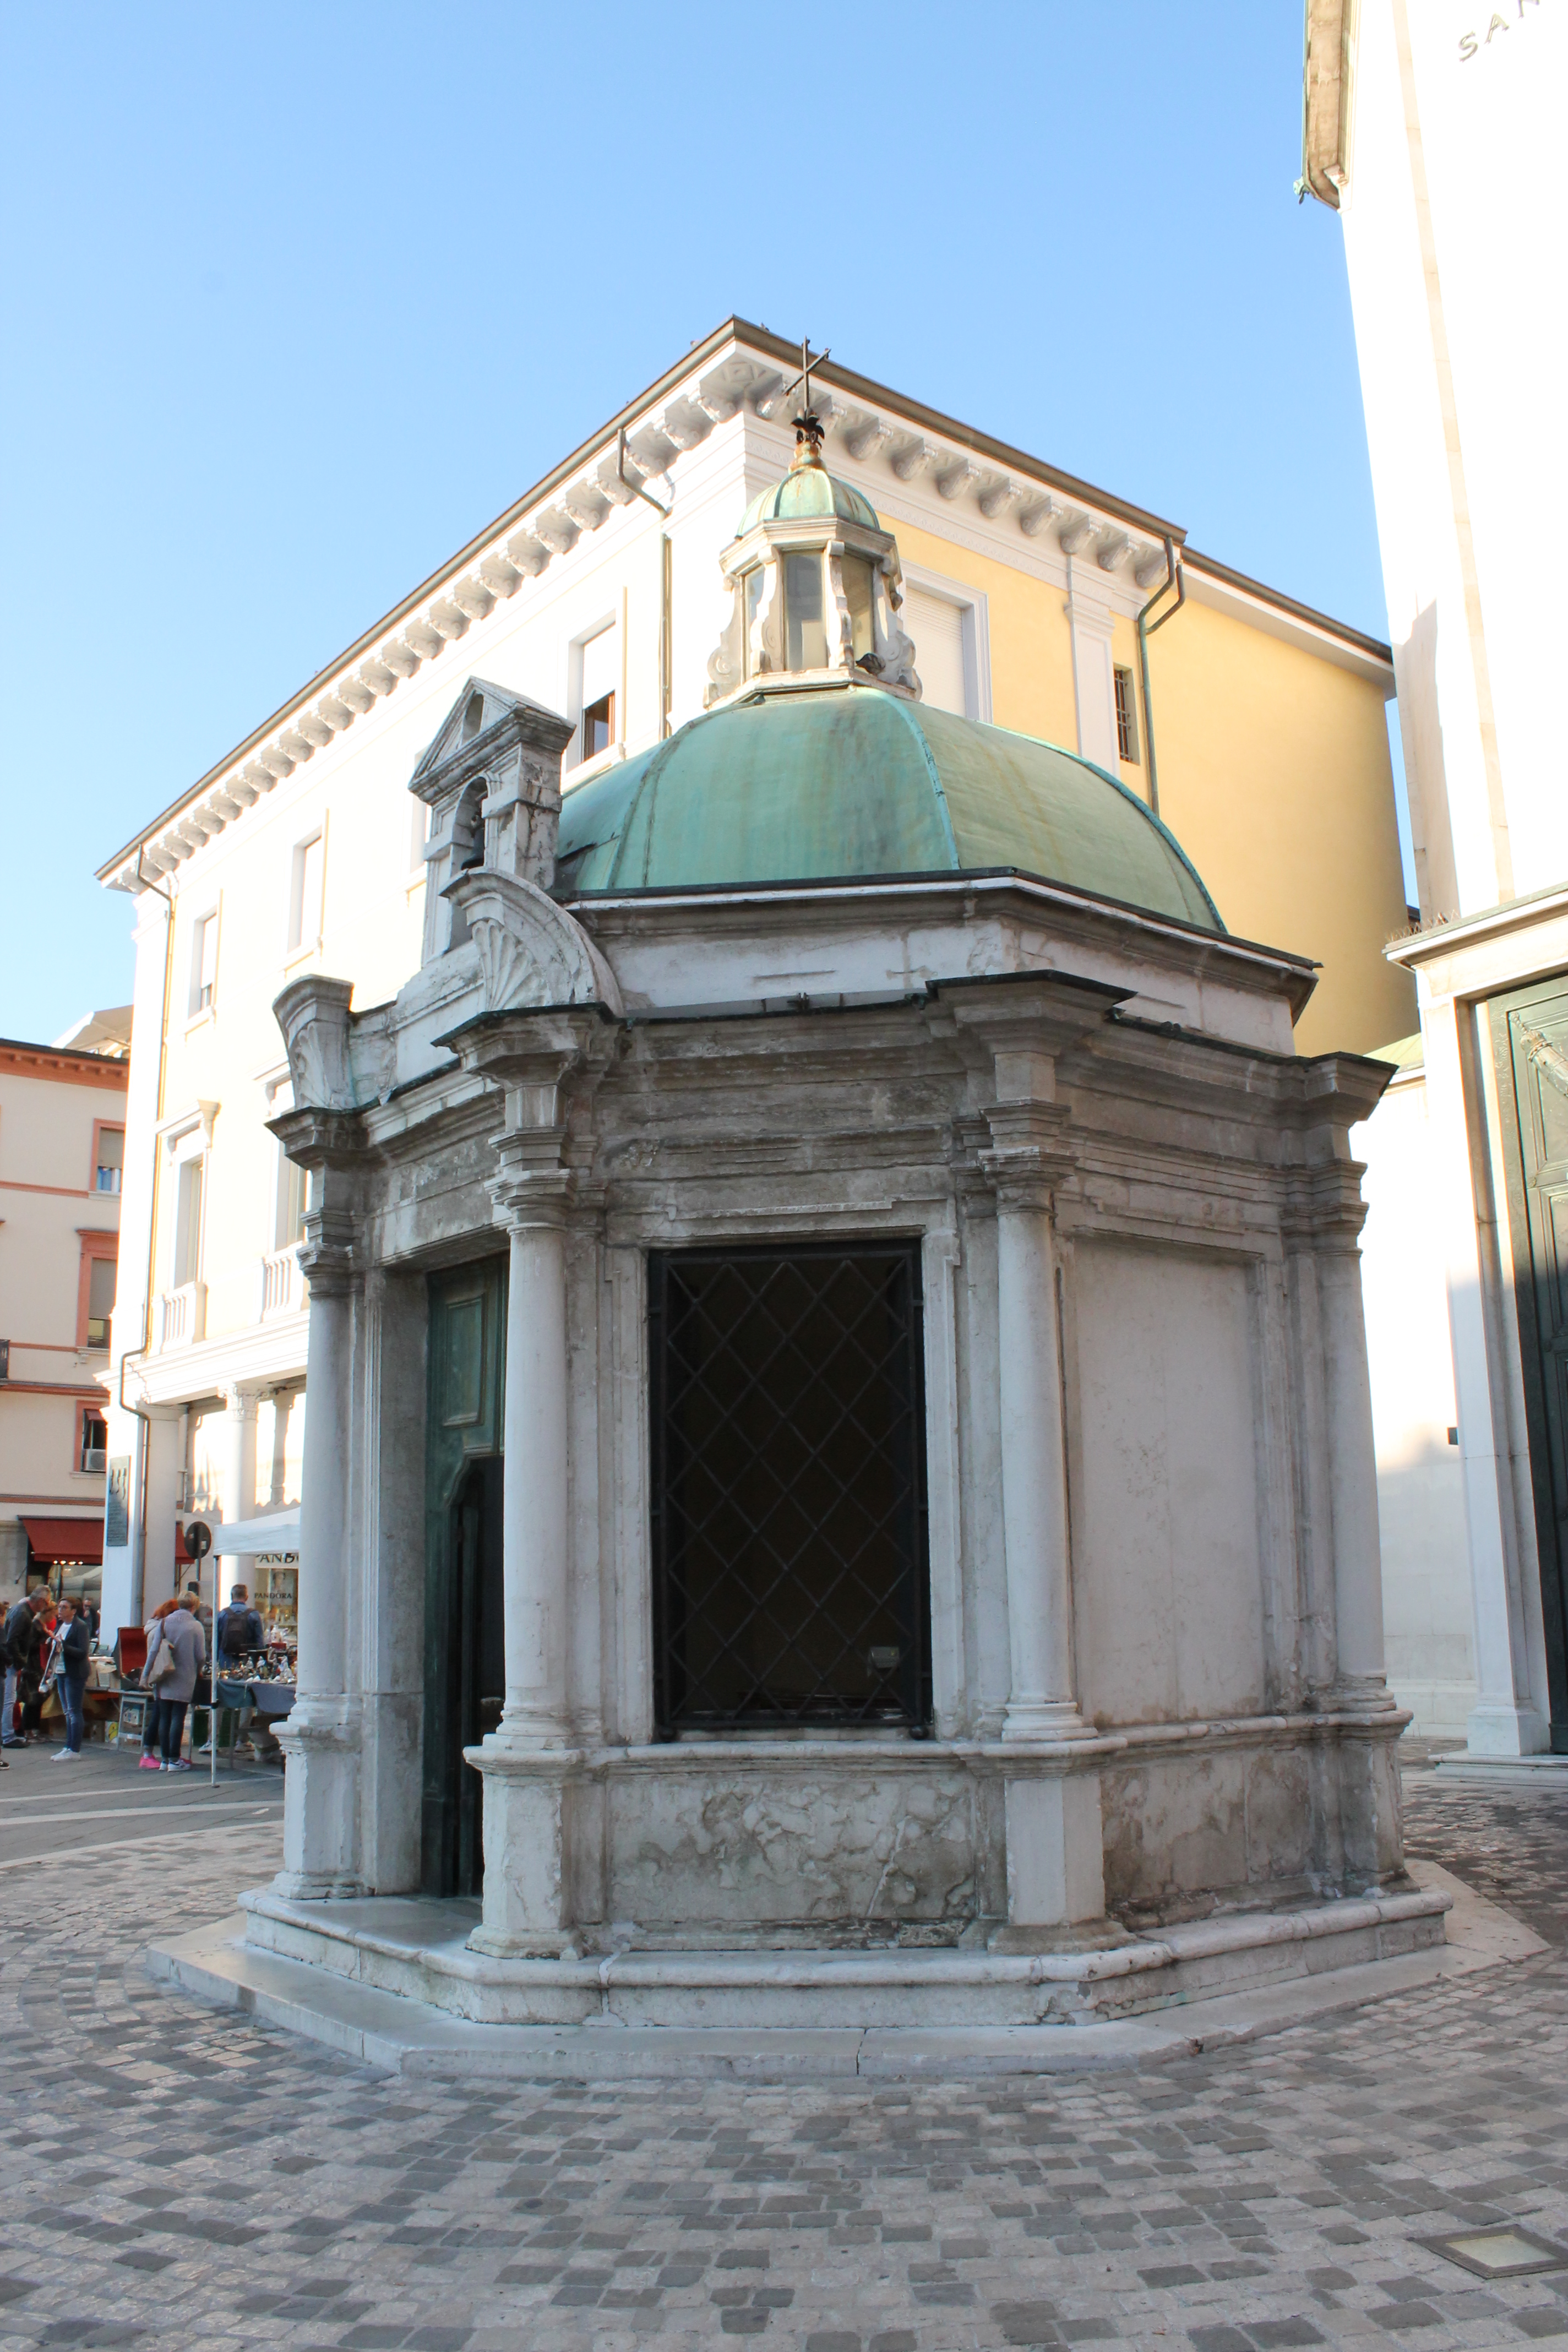 photo: https://upload.wikimedia.org/wikipedia/commons/2/2c/Tempio_di_Sant%27Antonio_di_i_Rimini.jpg